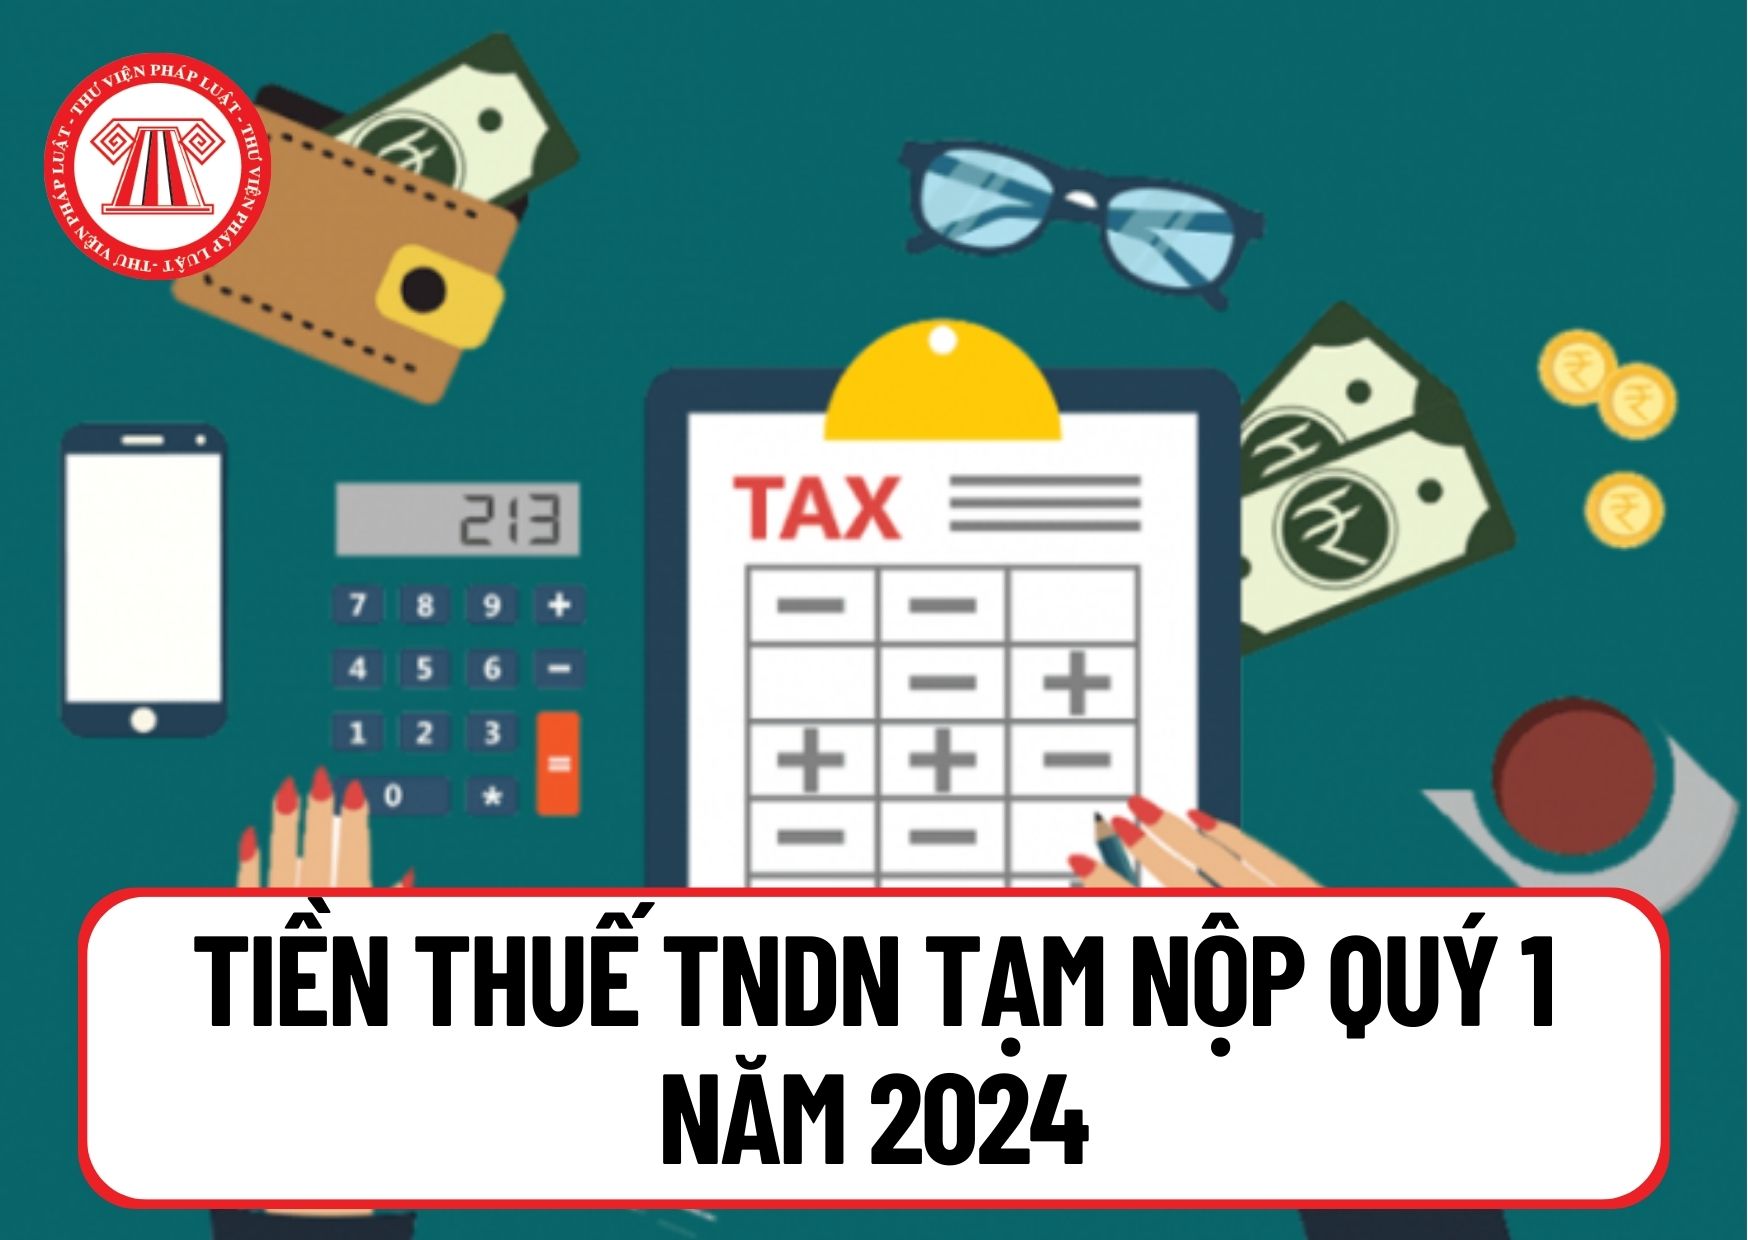 Tiền thuế TNDN tạm nộp Quý 1 năm 2024 phải nộp khi nào? Trường hợp nào không phải nộp tiền chậm nộp thuế?